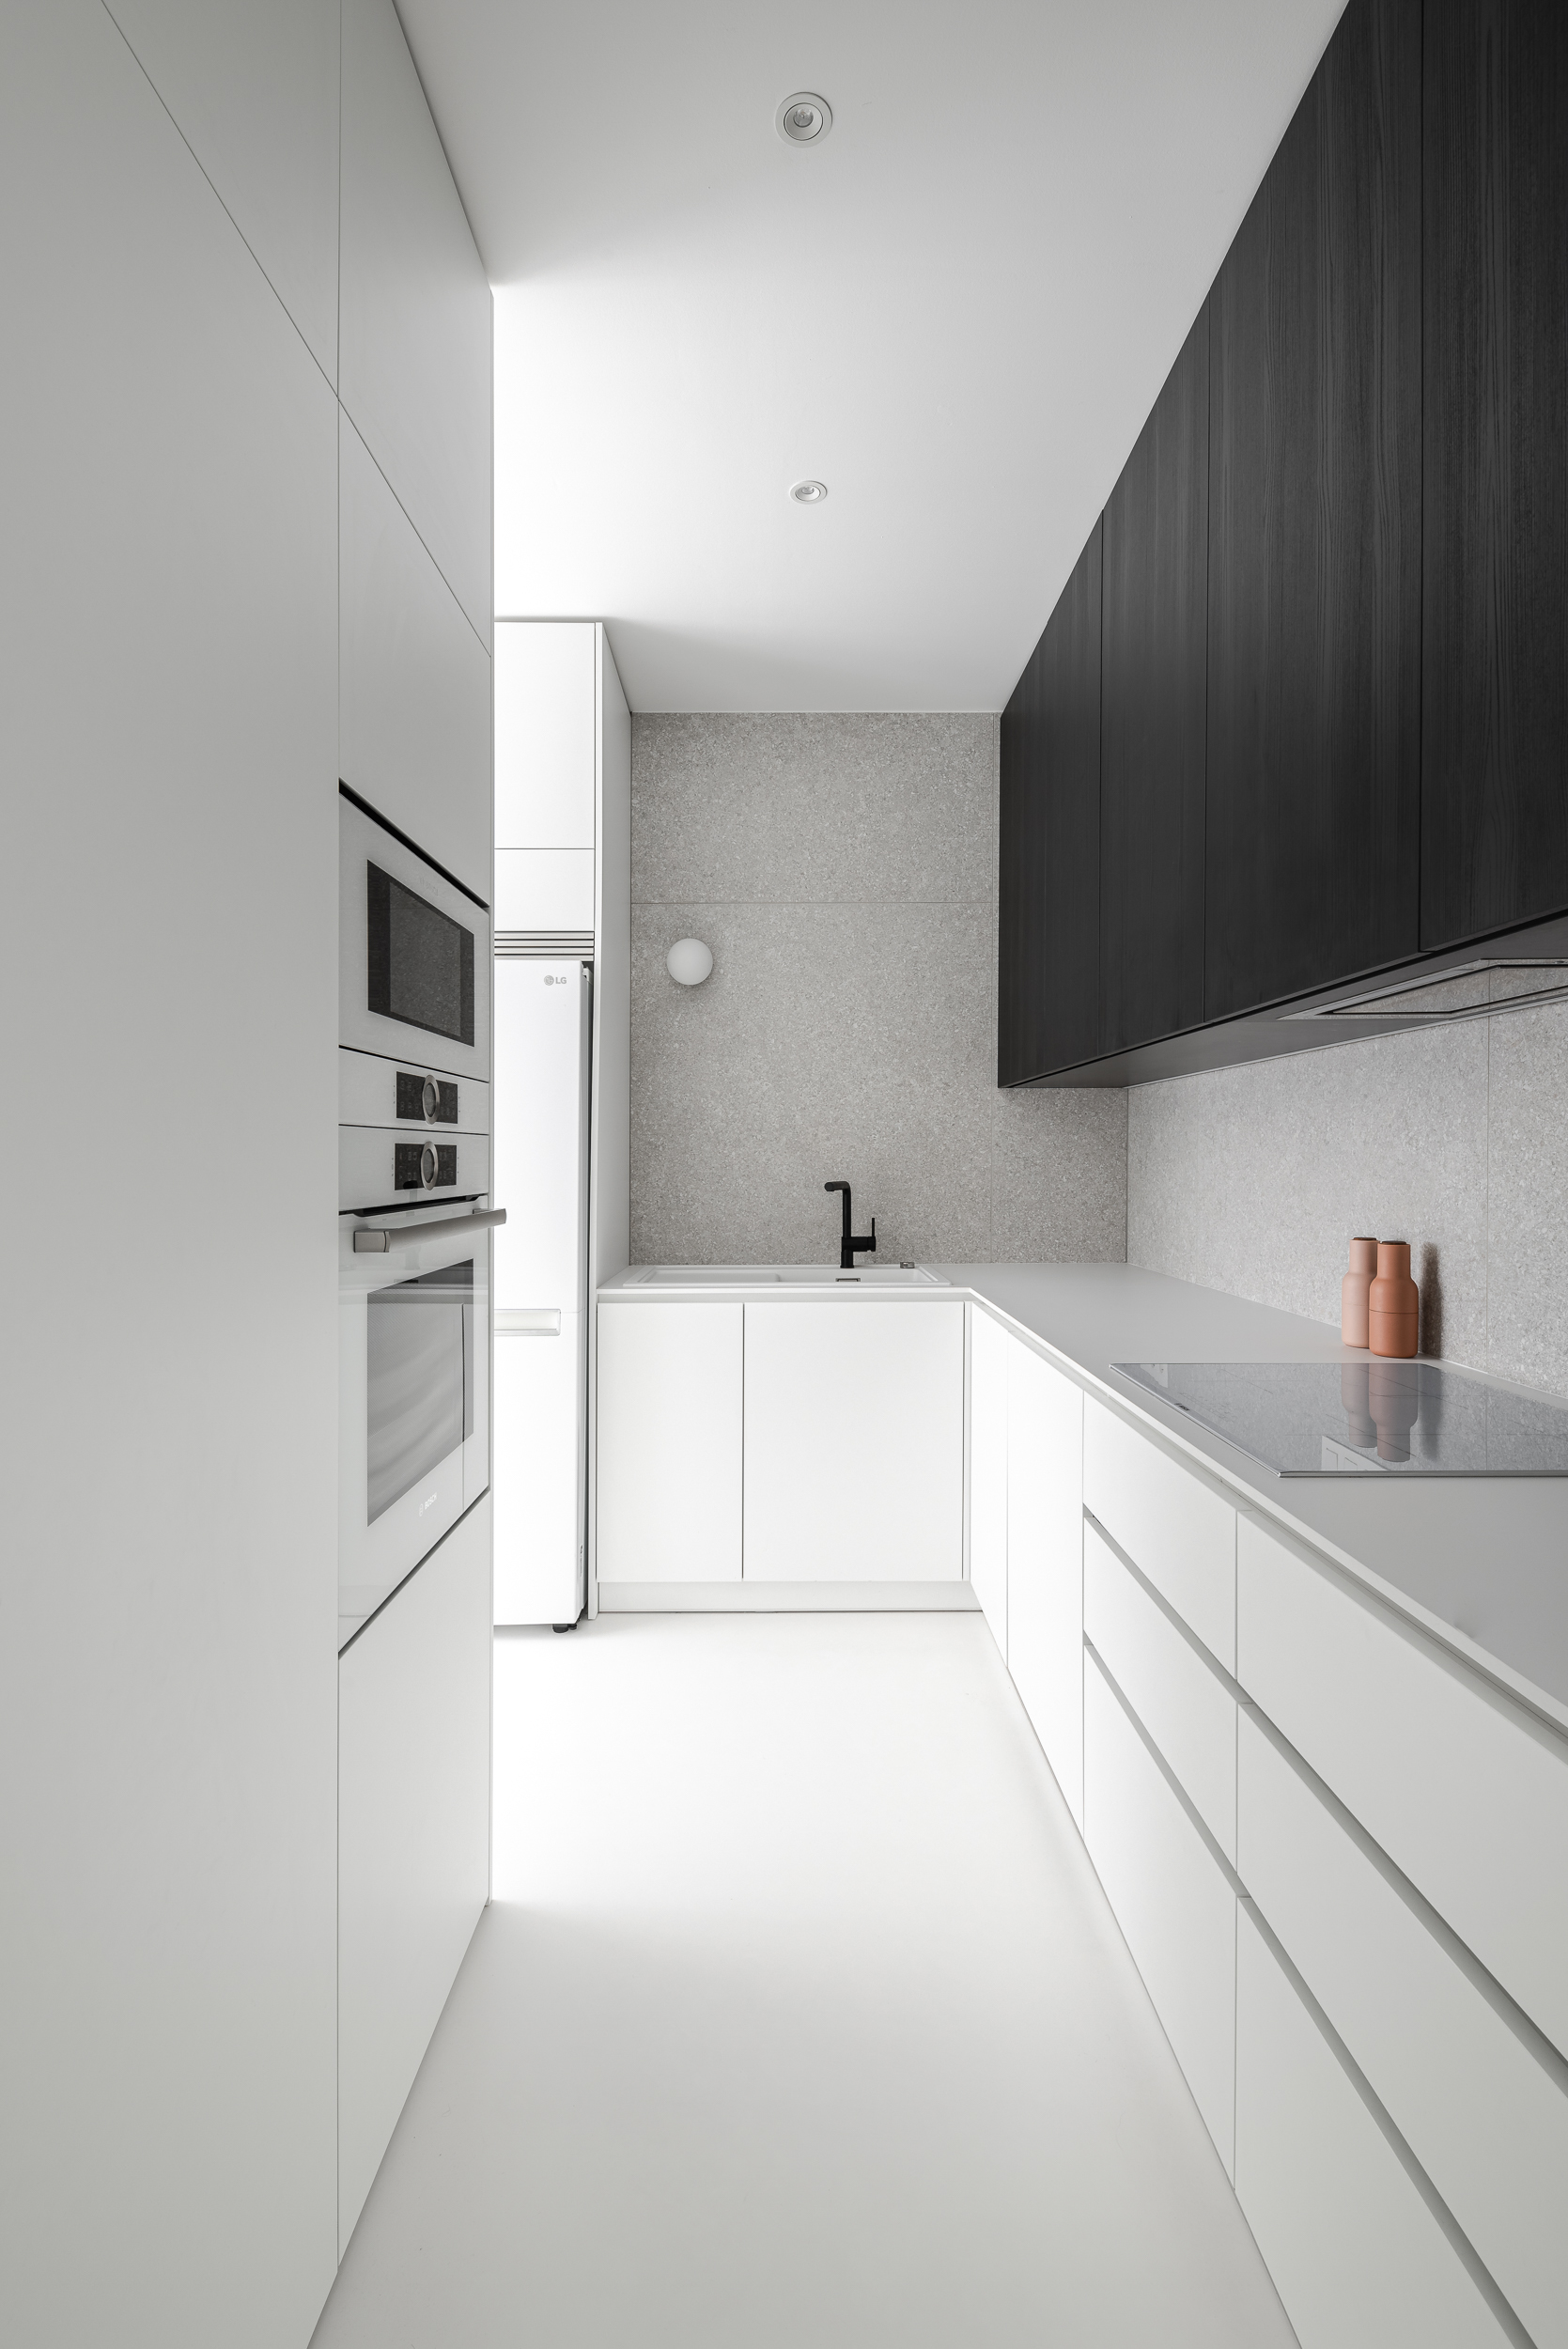 Kontinuita: biela kuchynský linka i ďalší nábytok v priestore bytu „STJR“ je organickým pokračovaním liatej bielej podlahy.